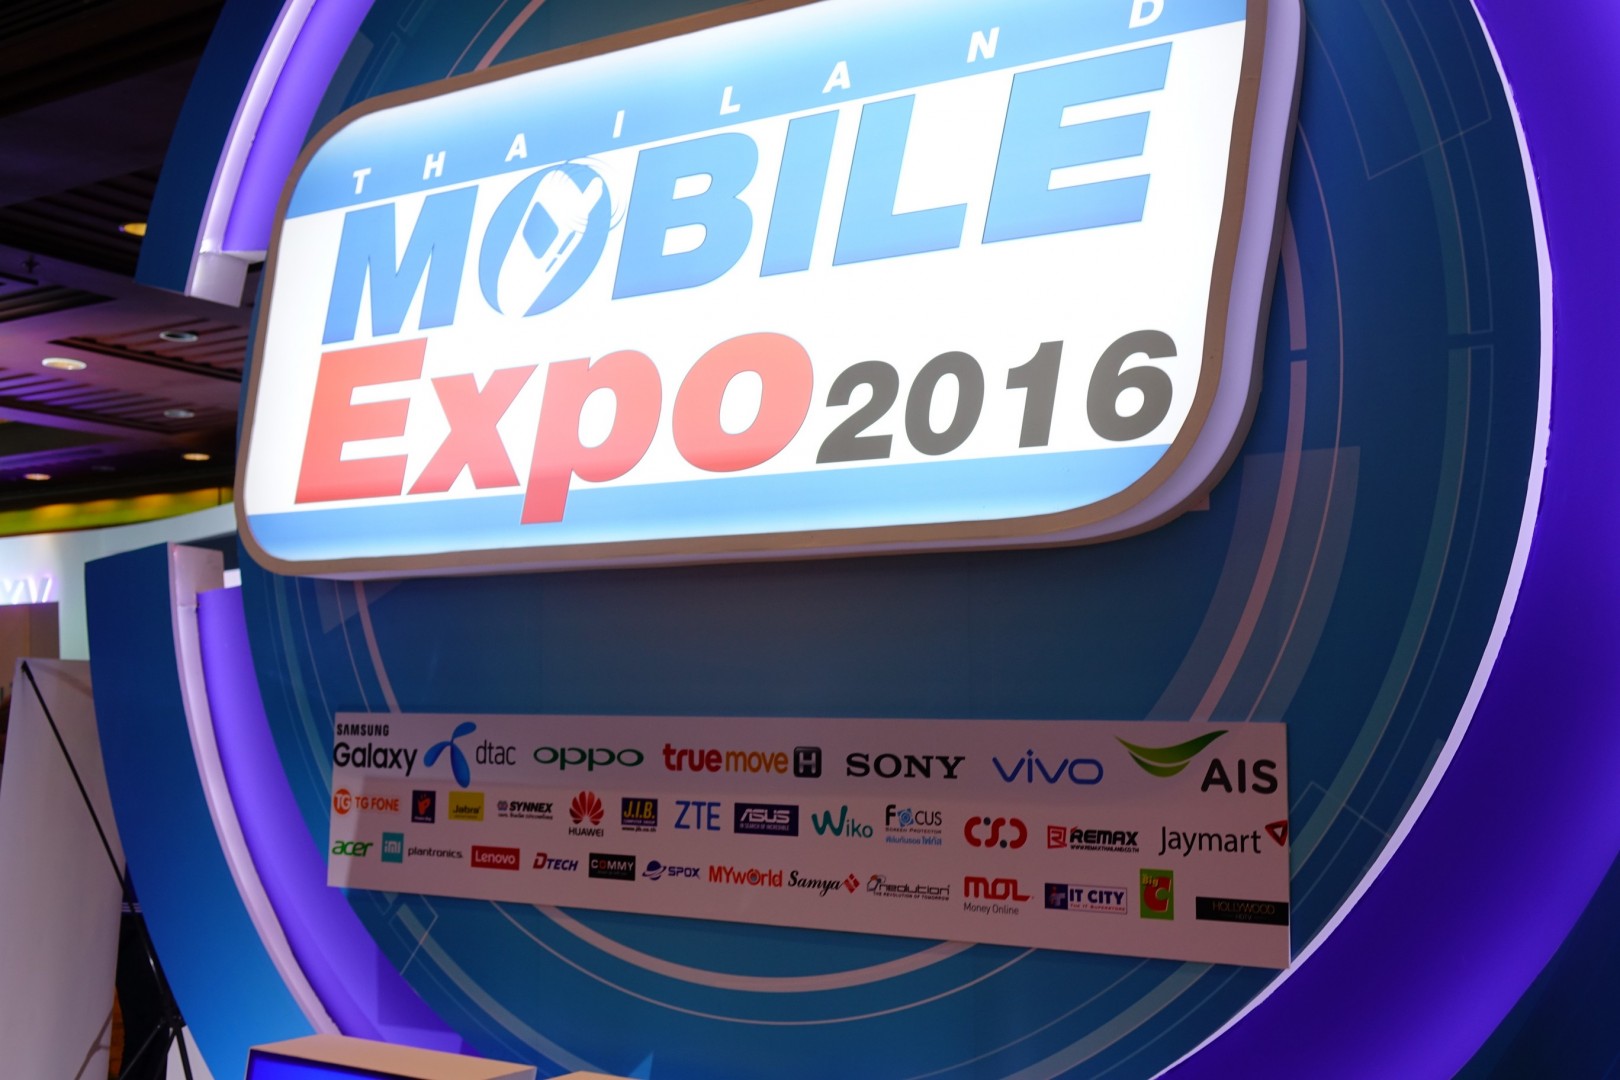 พาทัวร์ Thailand Mobile Expo 2016 ว่ามีอะไรเด็ด ๆ บ้าง ?